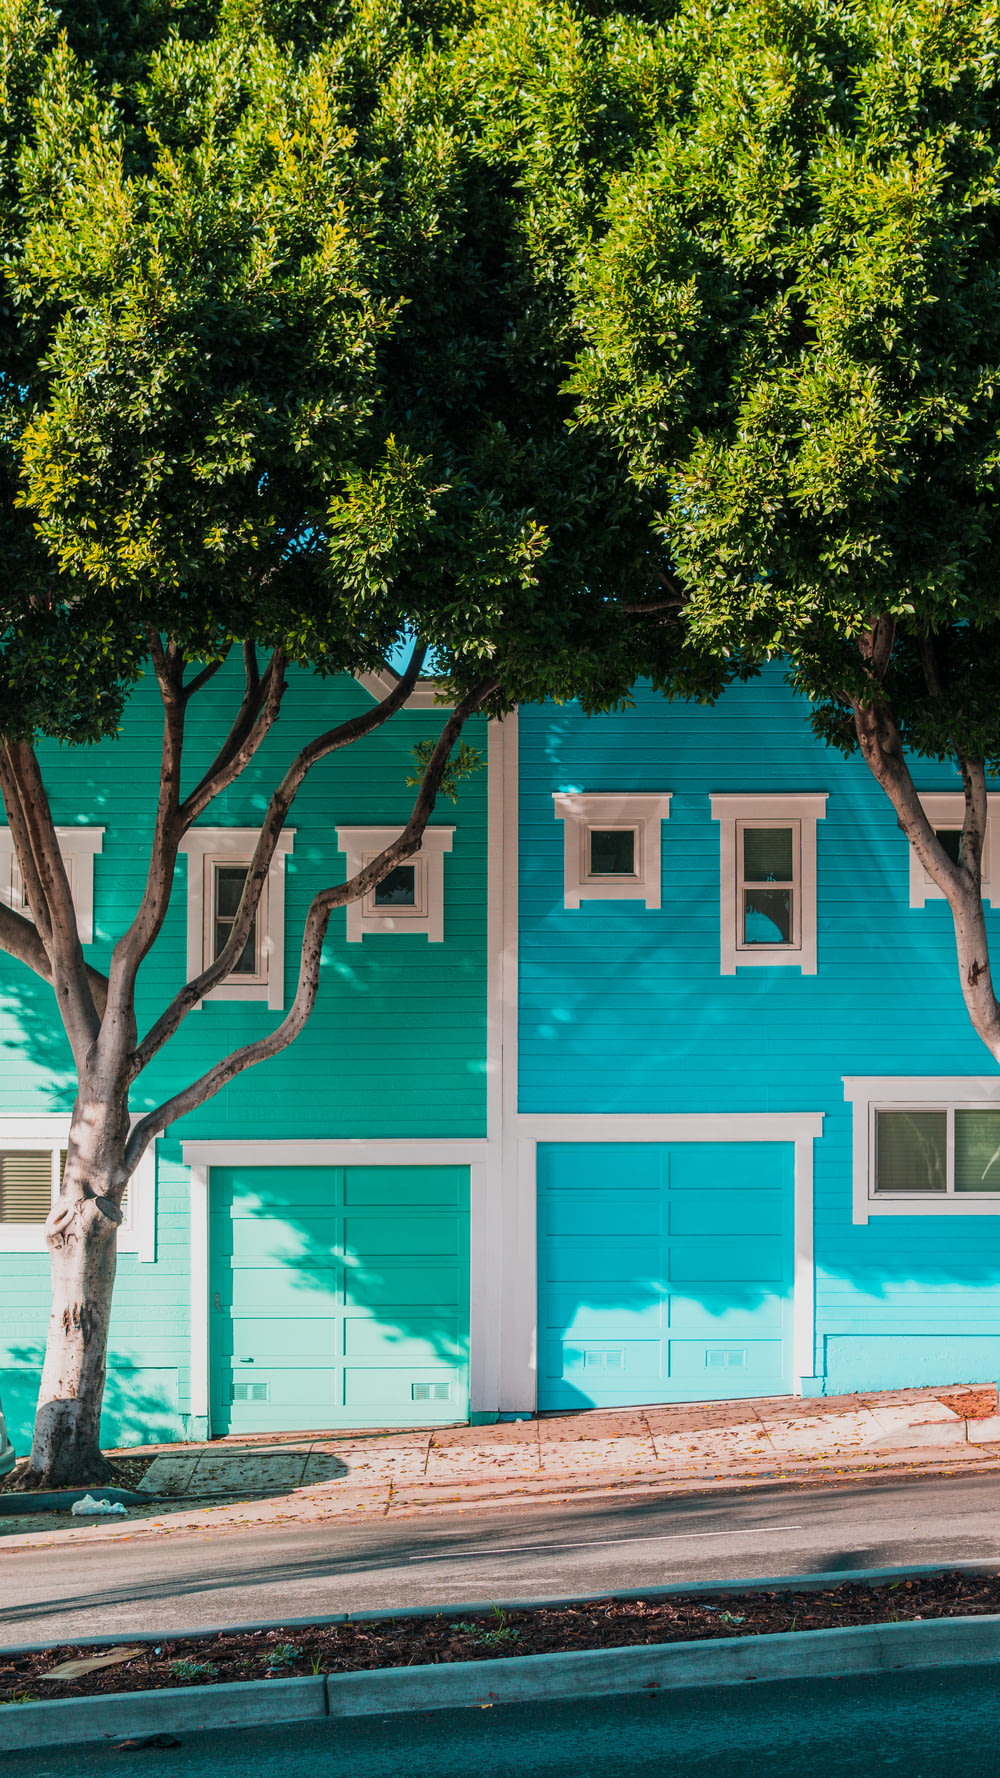 歩道の木々のそばの緑と青の家